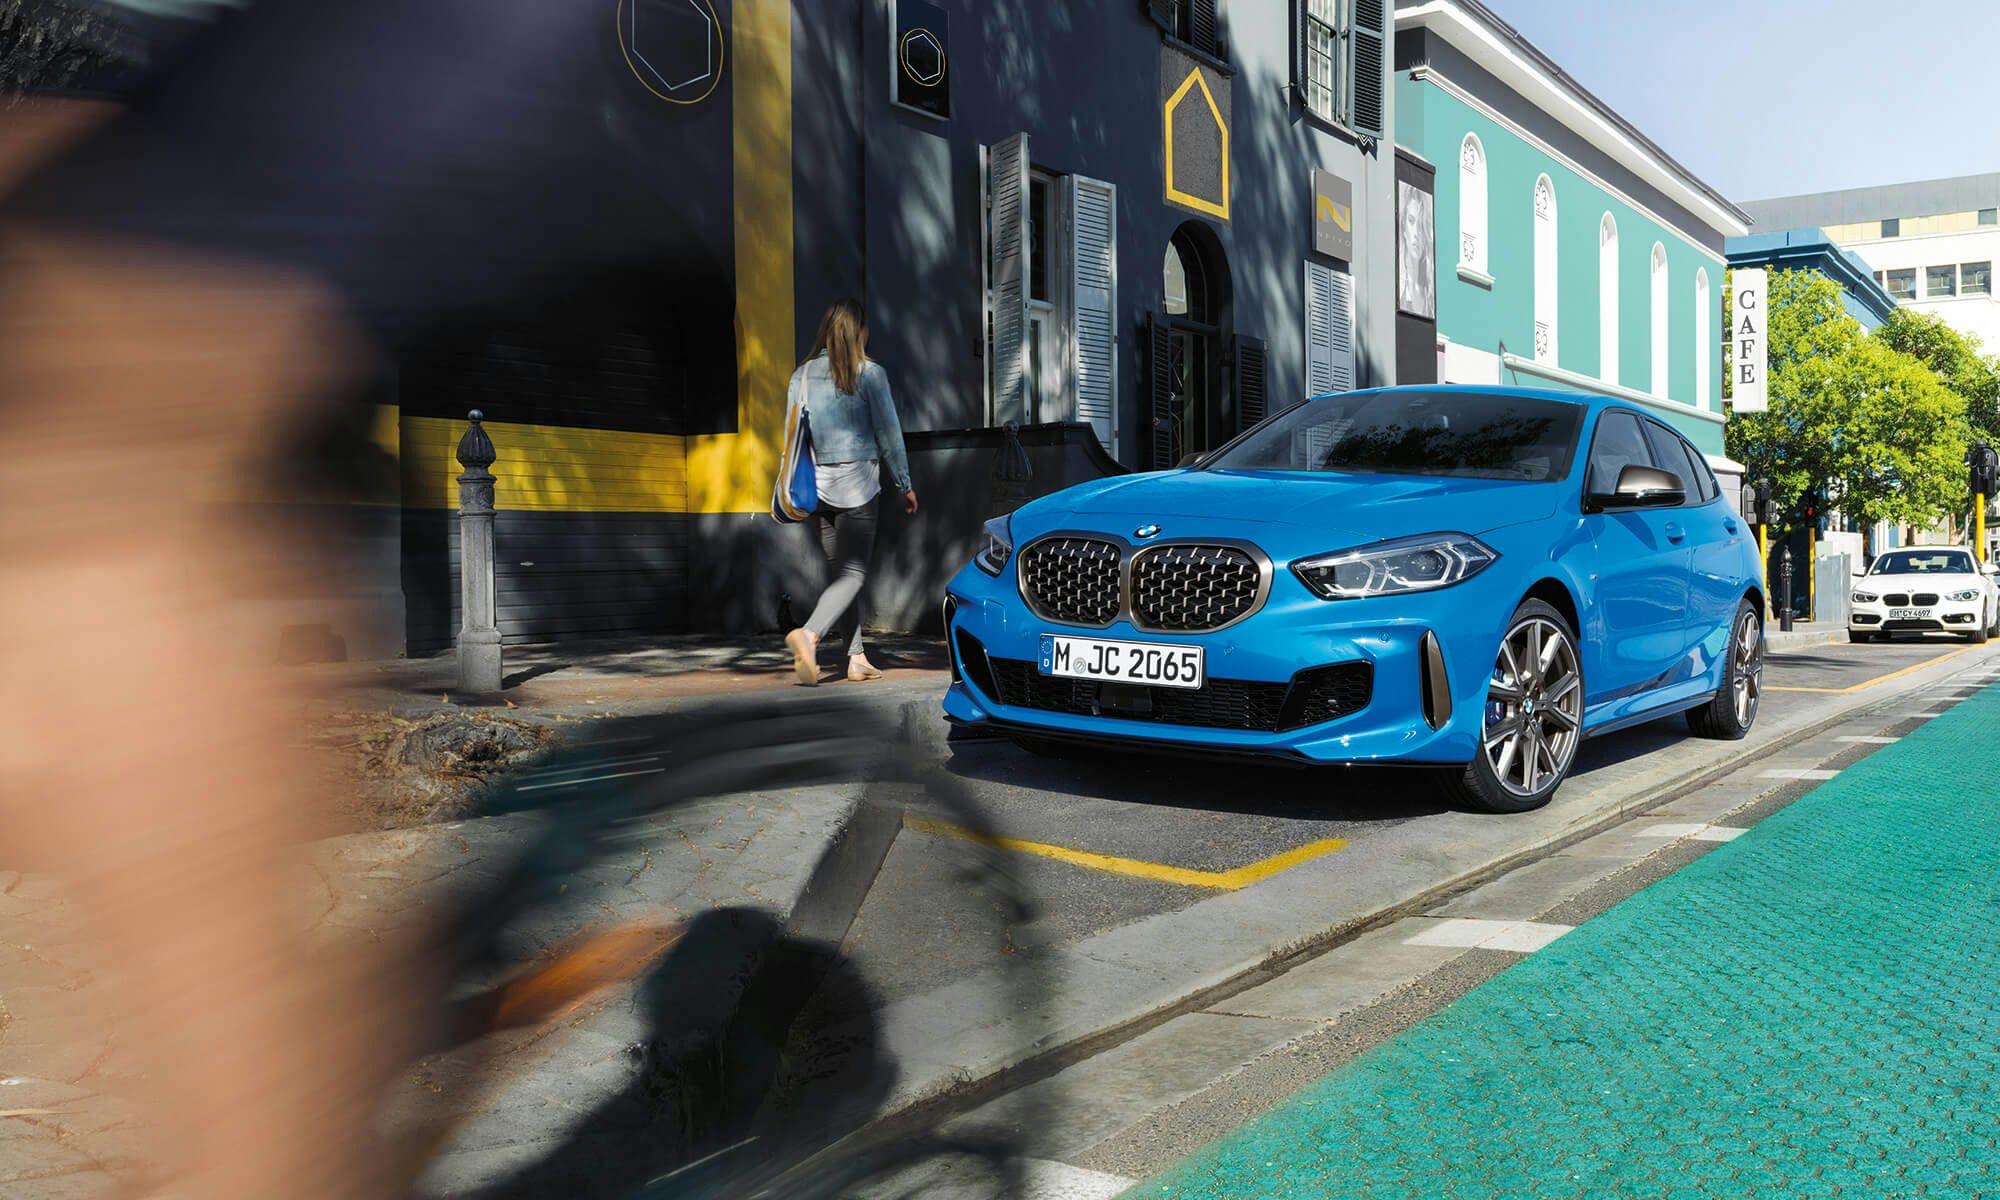 BMW 1er » Ersatzteile & Zubehör Online Shop